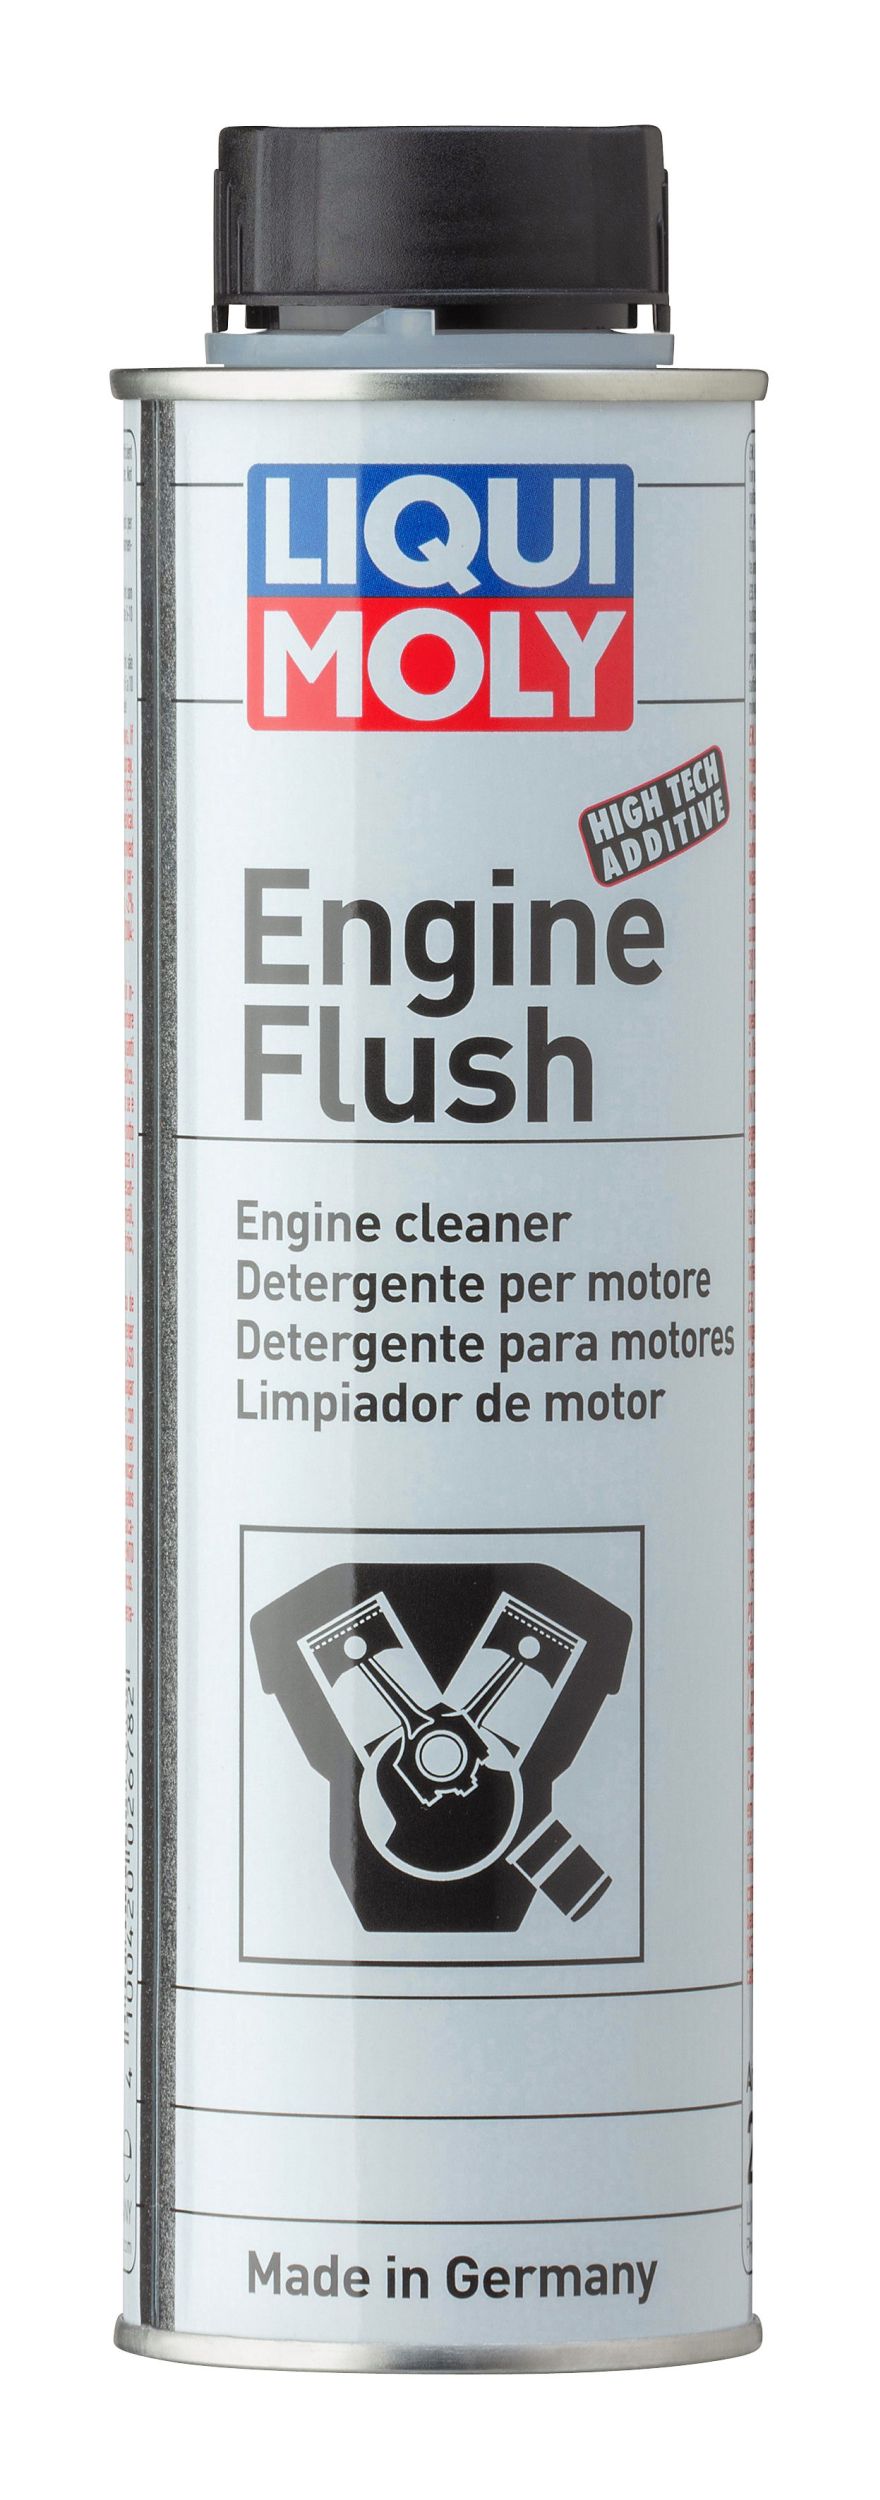 Aditivo Engine Flush Plus - Liqui Moly - Limpiador De Carter